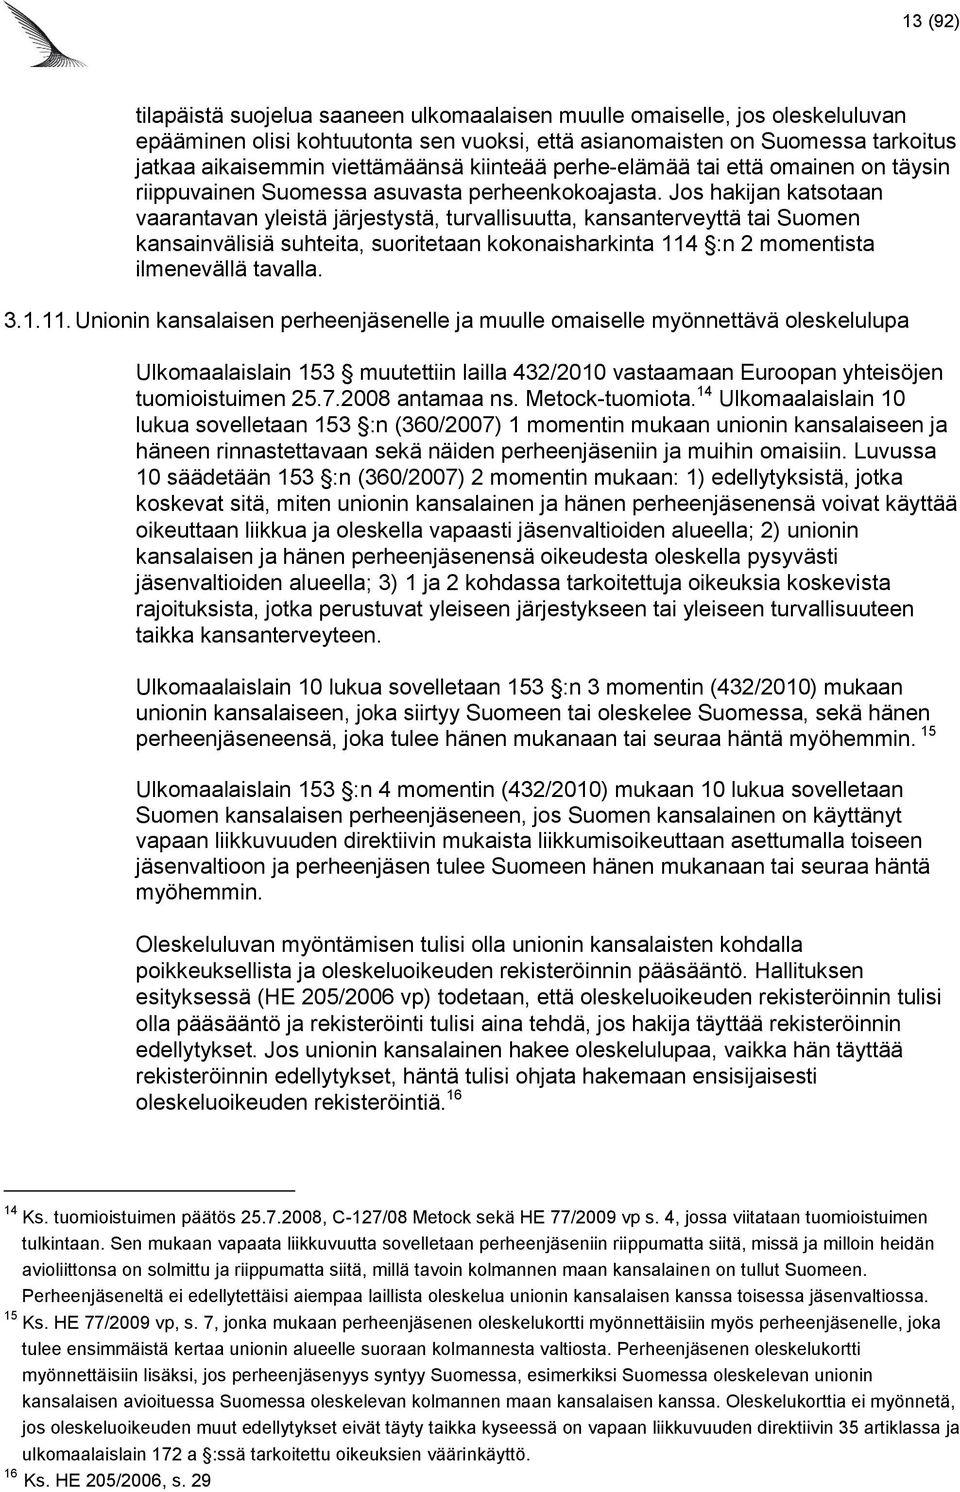 Jos hakijan katsotaan vaarantavan yleistä järjestystä, turvallisuutta, kansanterveyttä tai Suomen kansainvälisiä suhteita, suoritetaan kokonaisharkinta 114